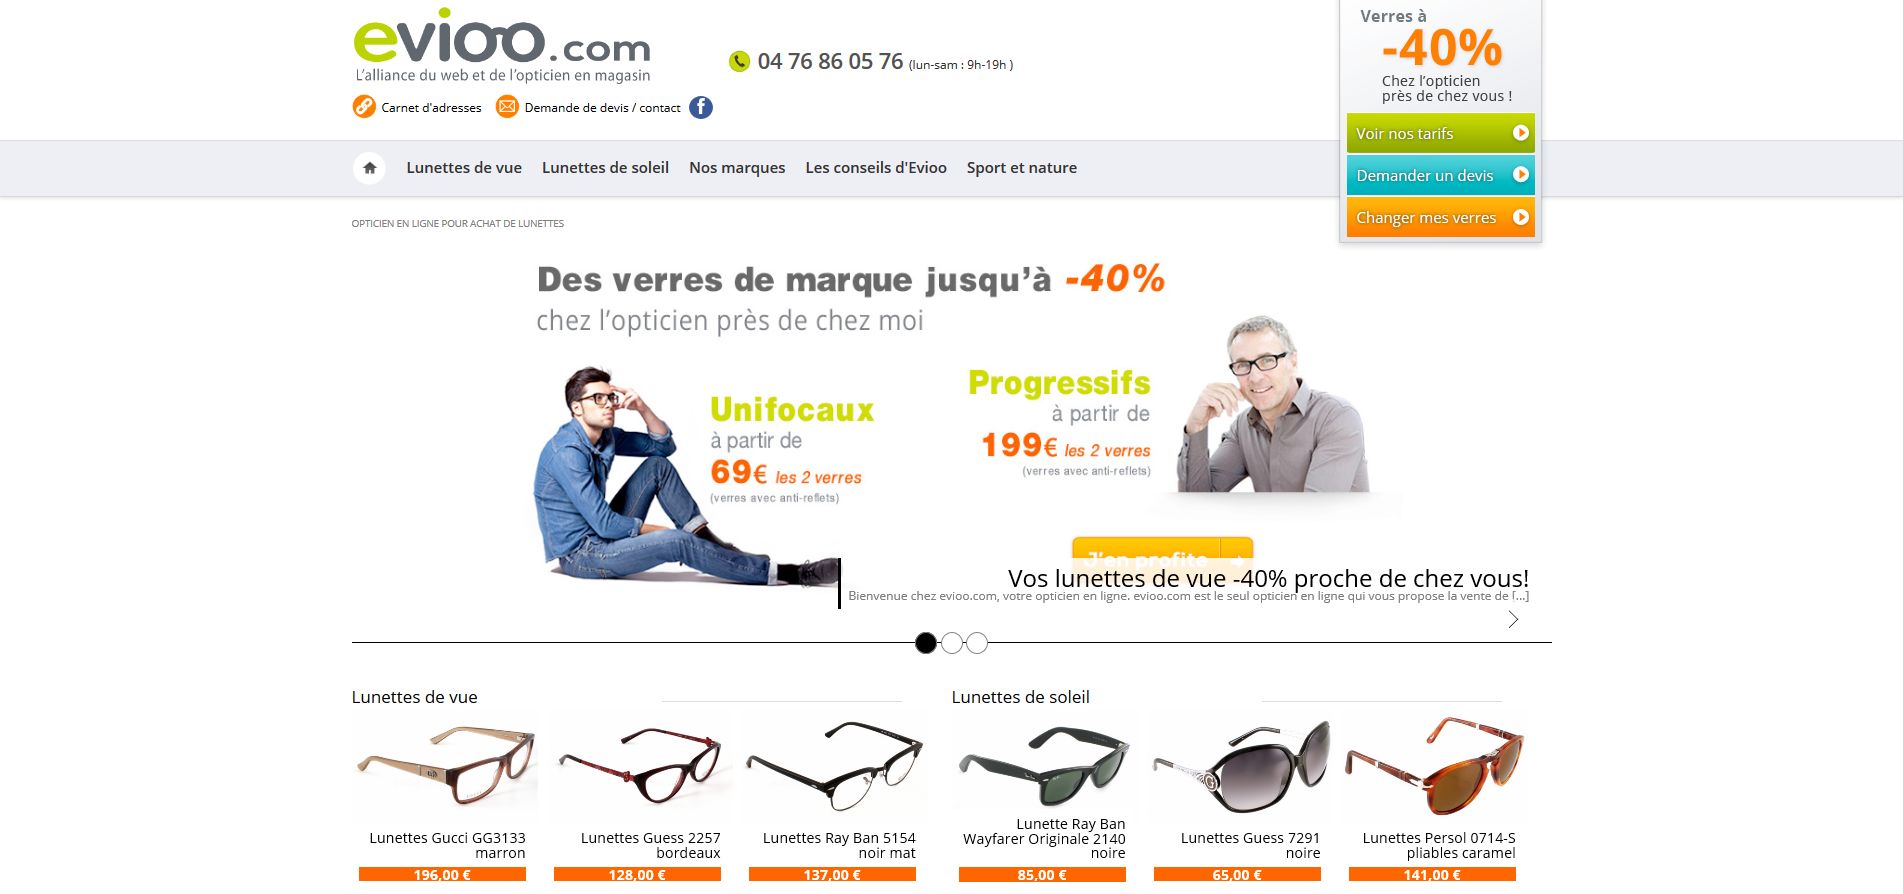 Evioo.com – Devis en ligne pour des lunettes de vue